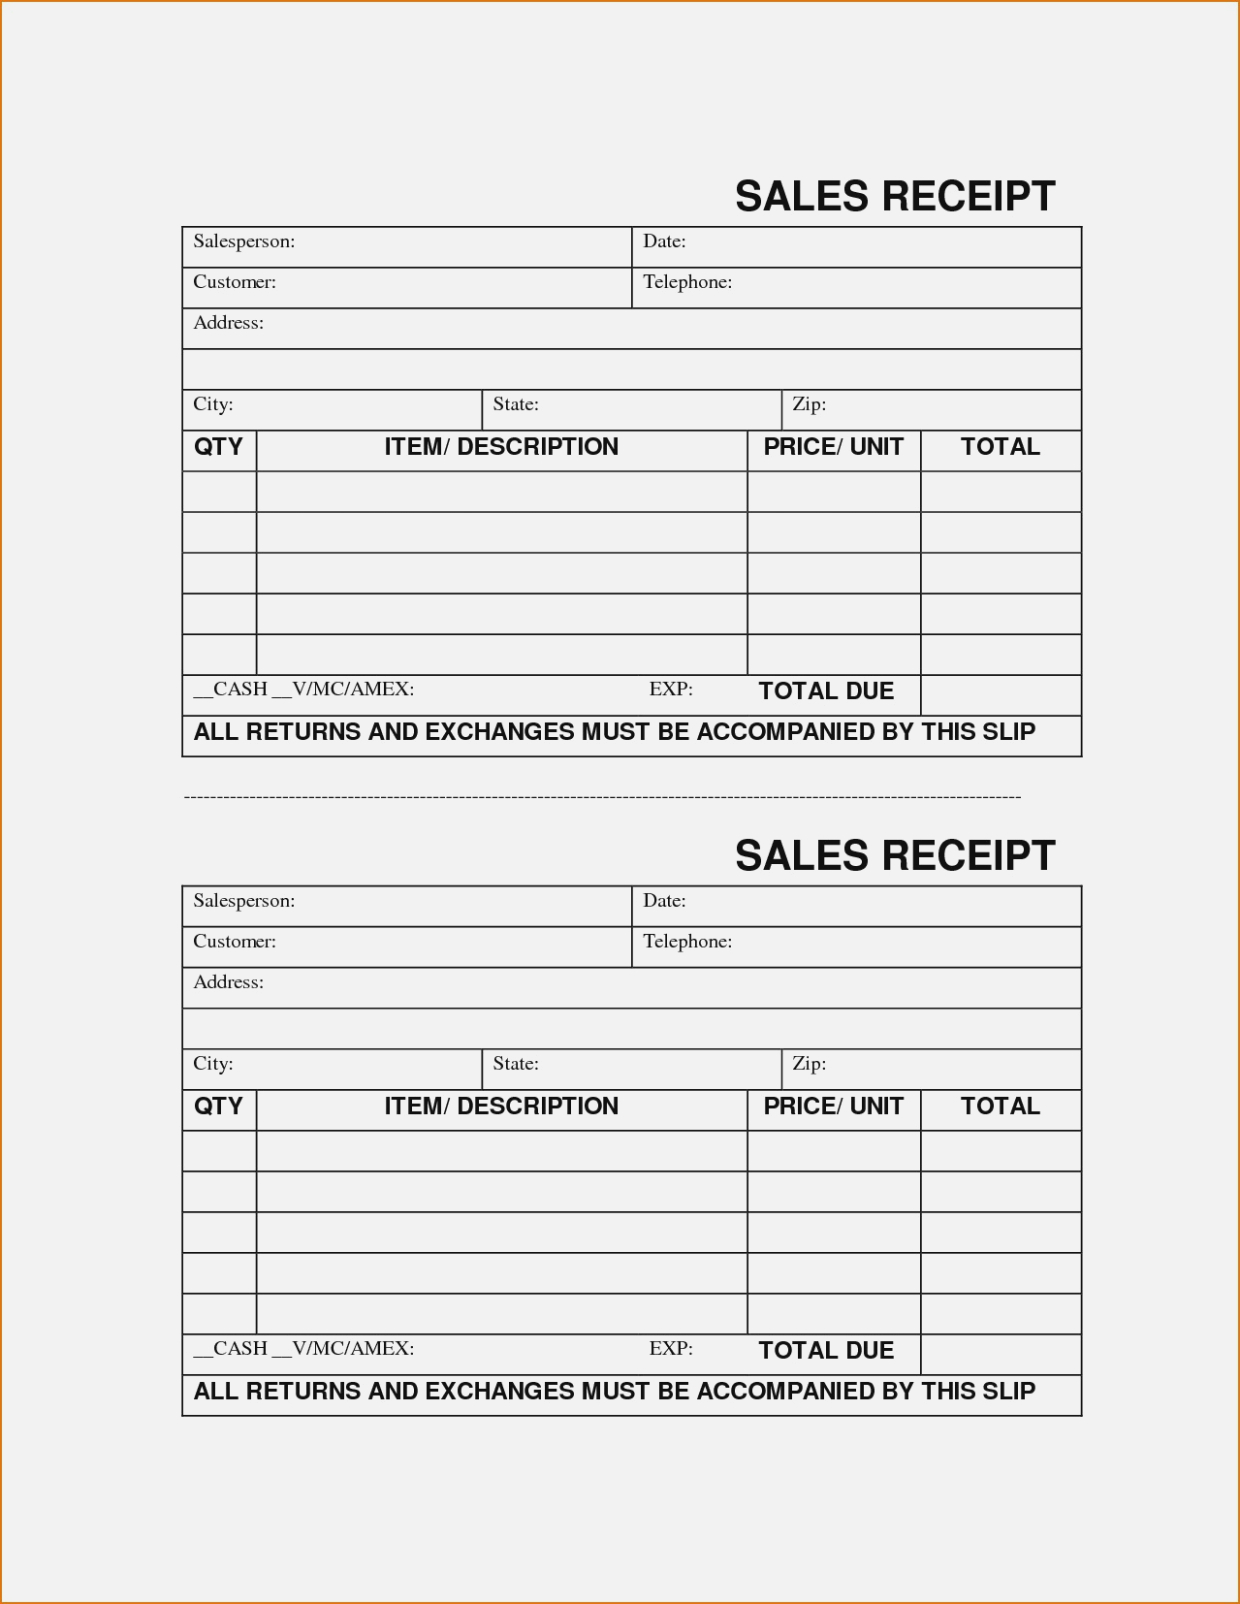 Create Printable Forms Online Sample Sales Receipt Template Lovely - Free Printable Sales Receipts Online